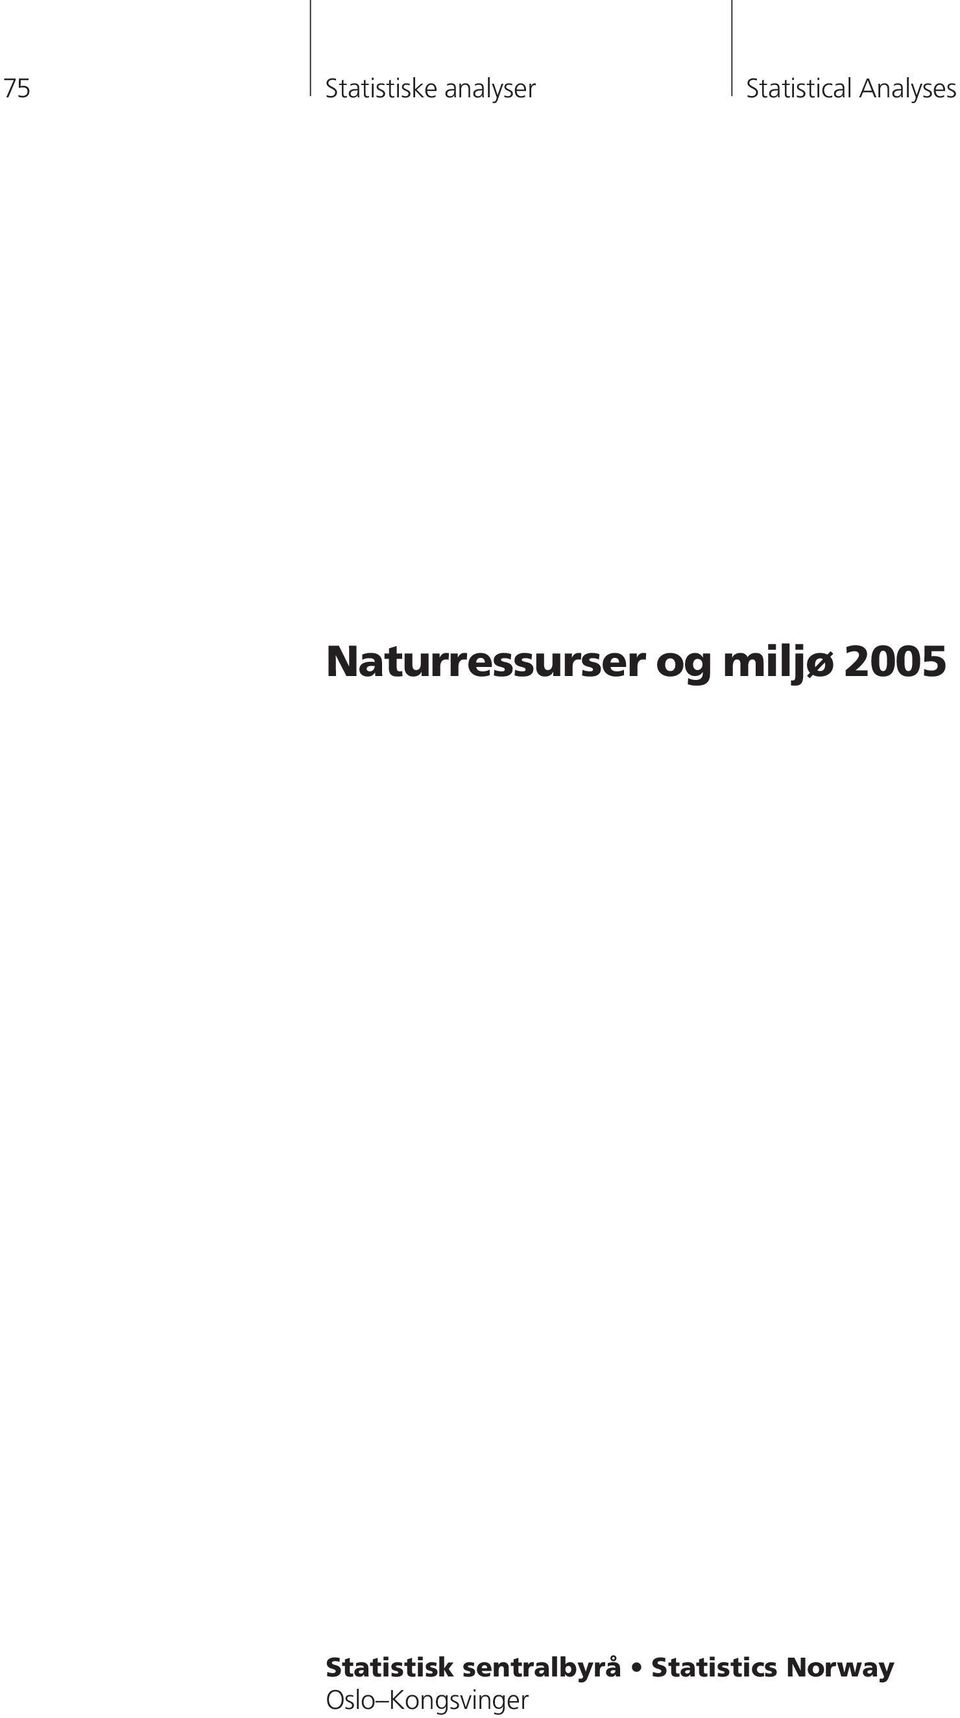 Naturressurser og miljø 2005